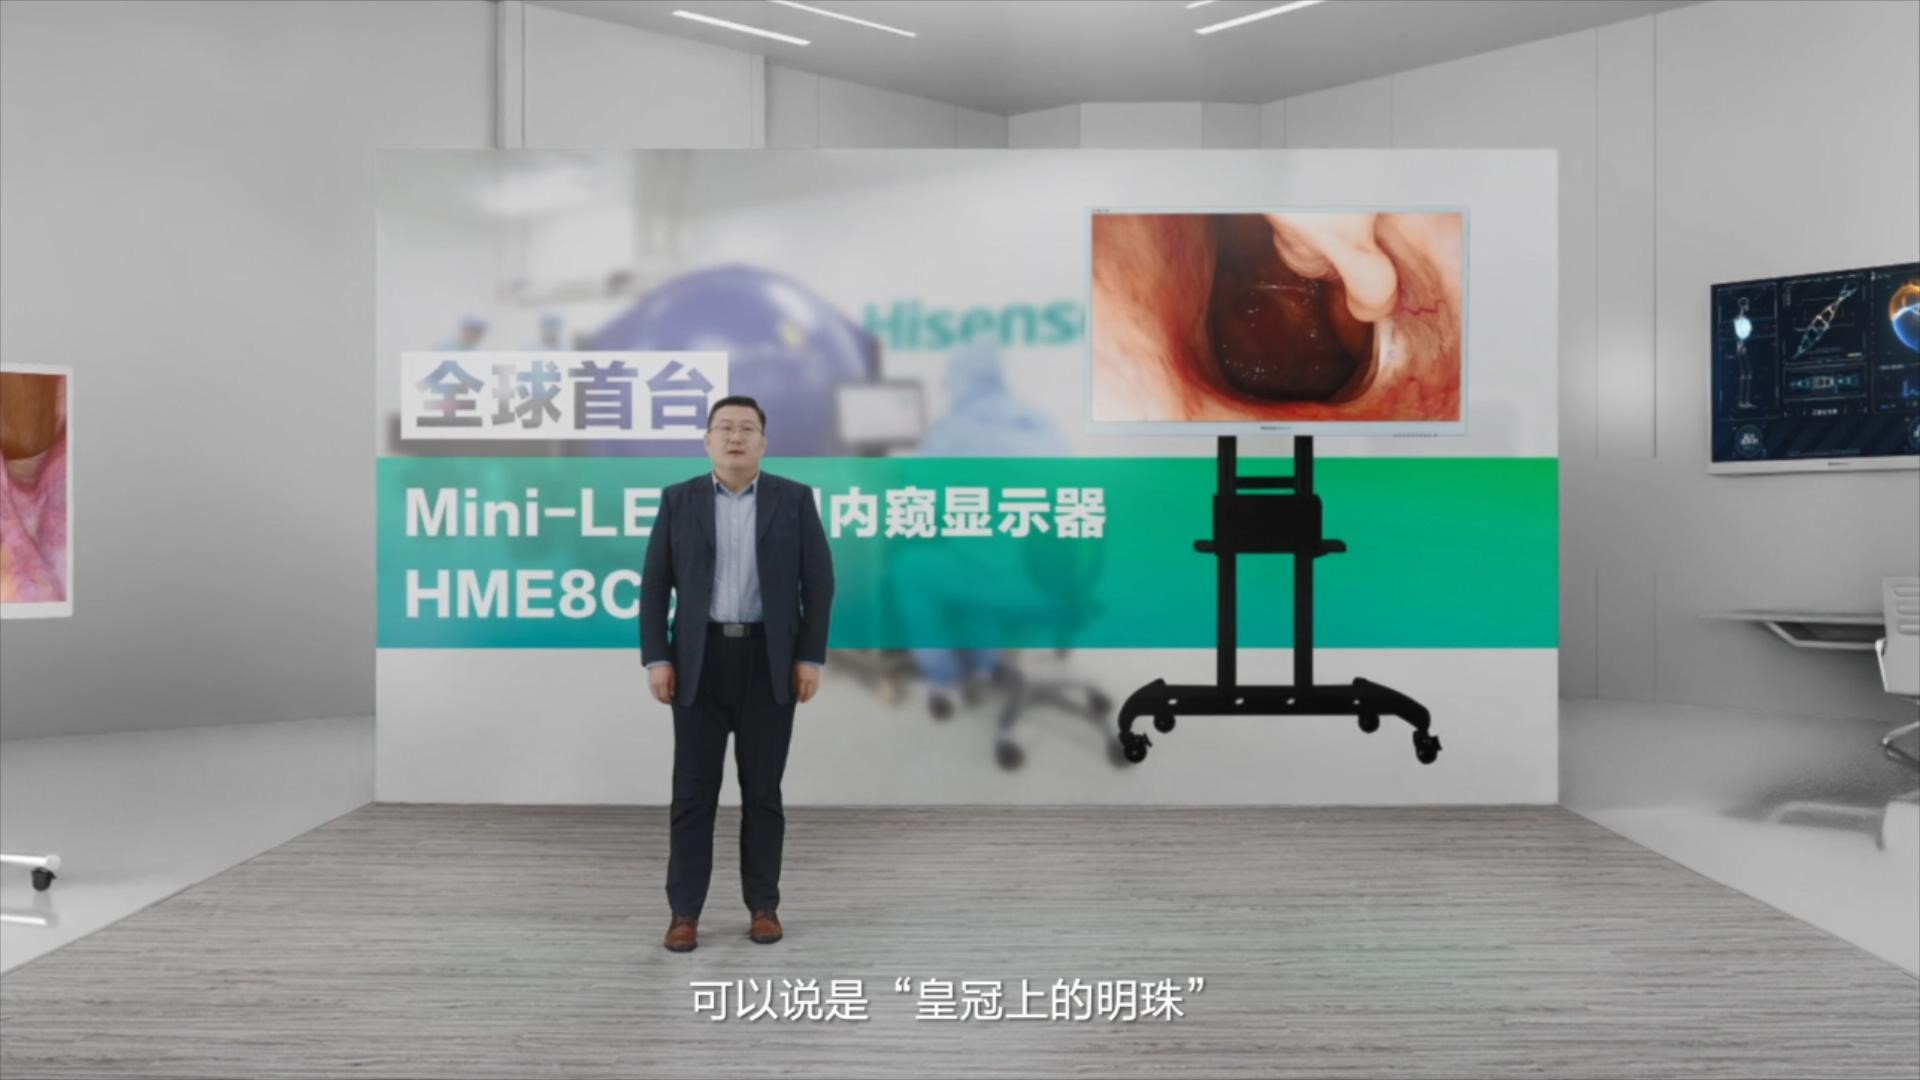 海信发布全球首台55英寸Mini-LED医用内窥显示器